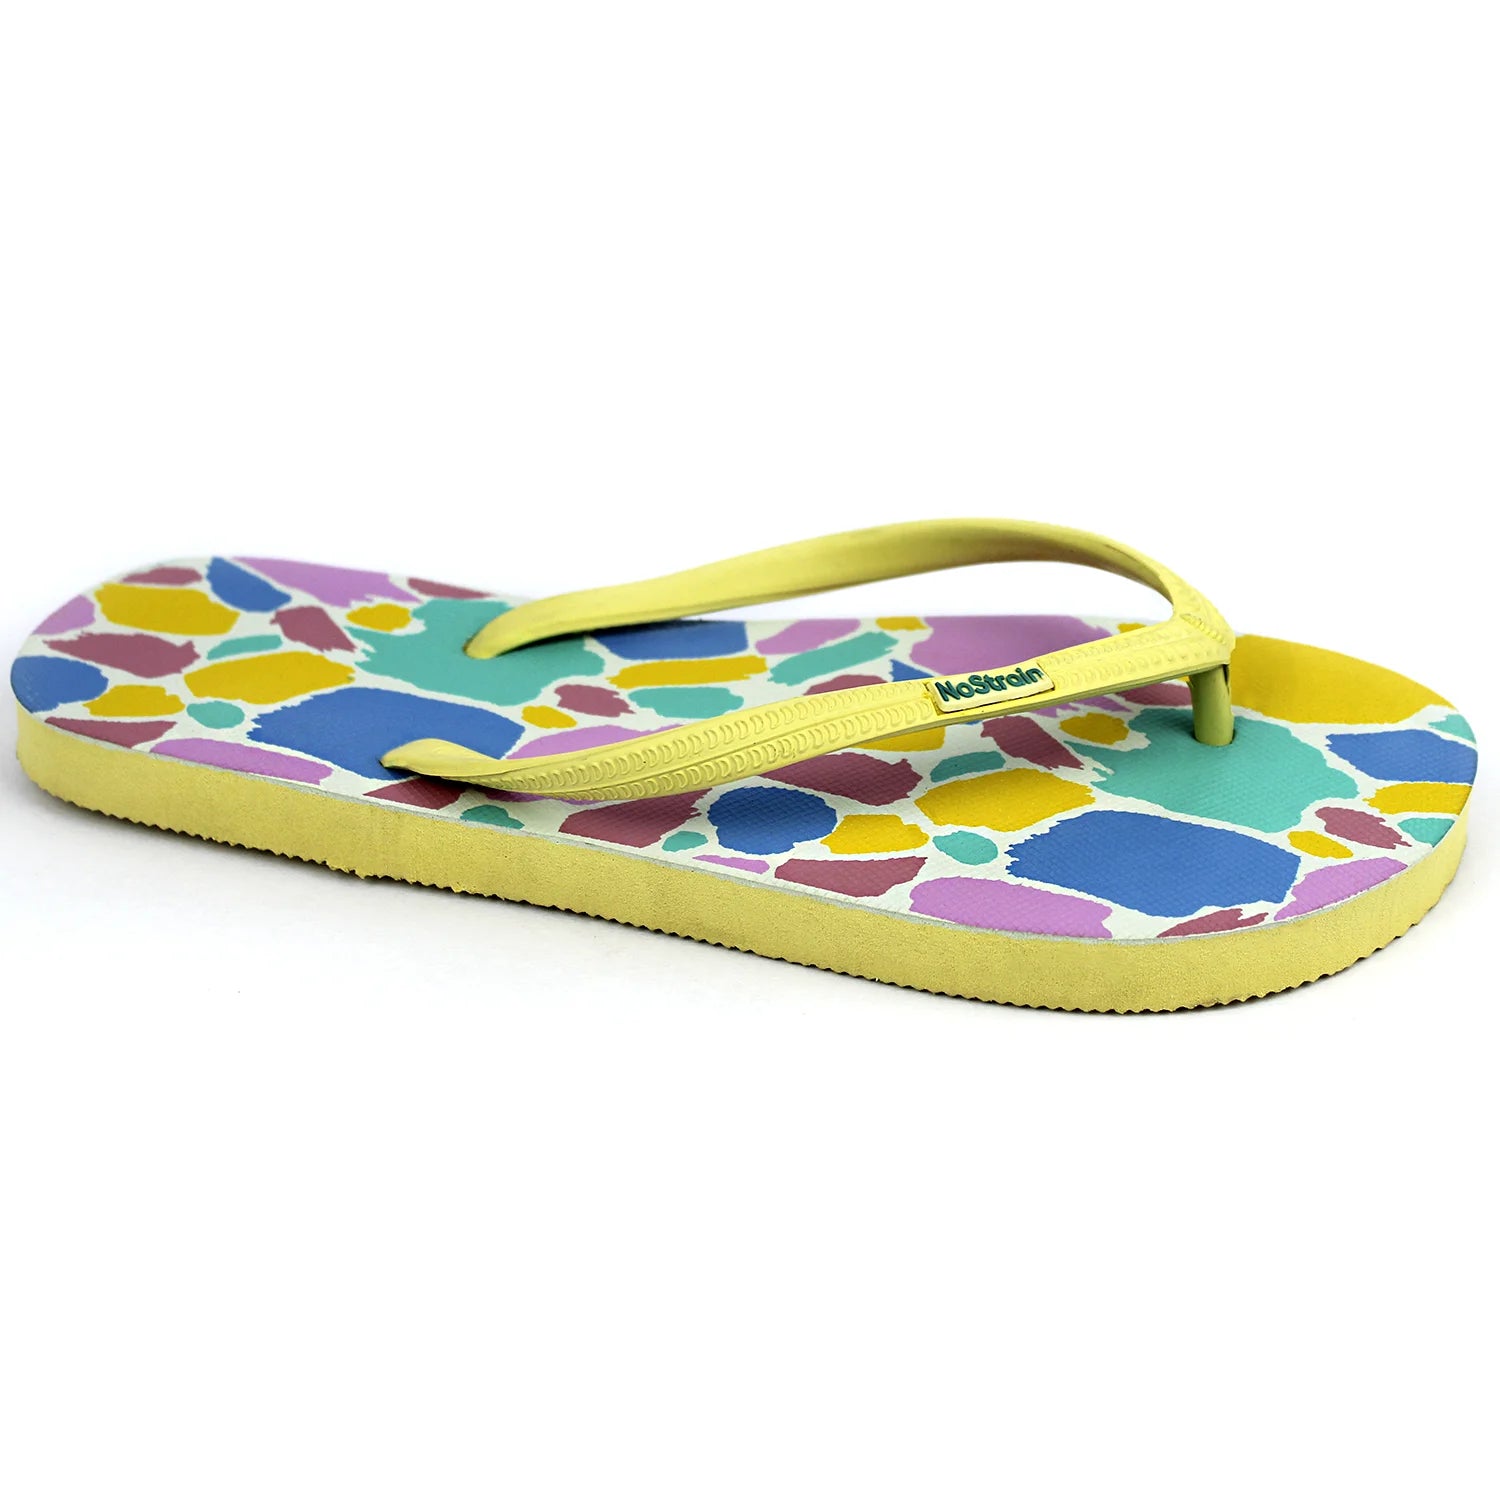 GoWild Pastel Yellow Flip-flops (Women)